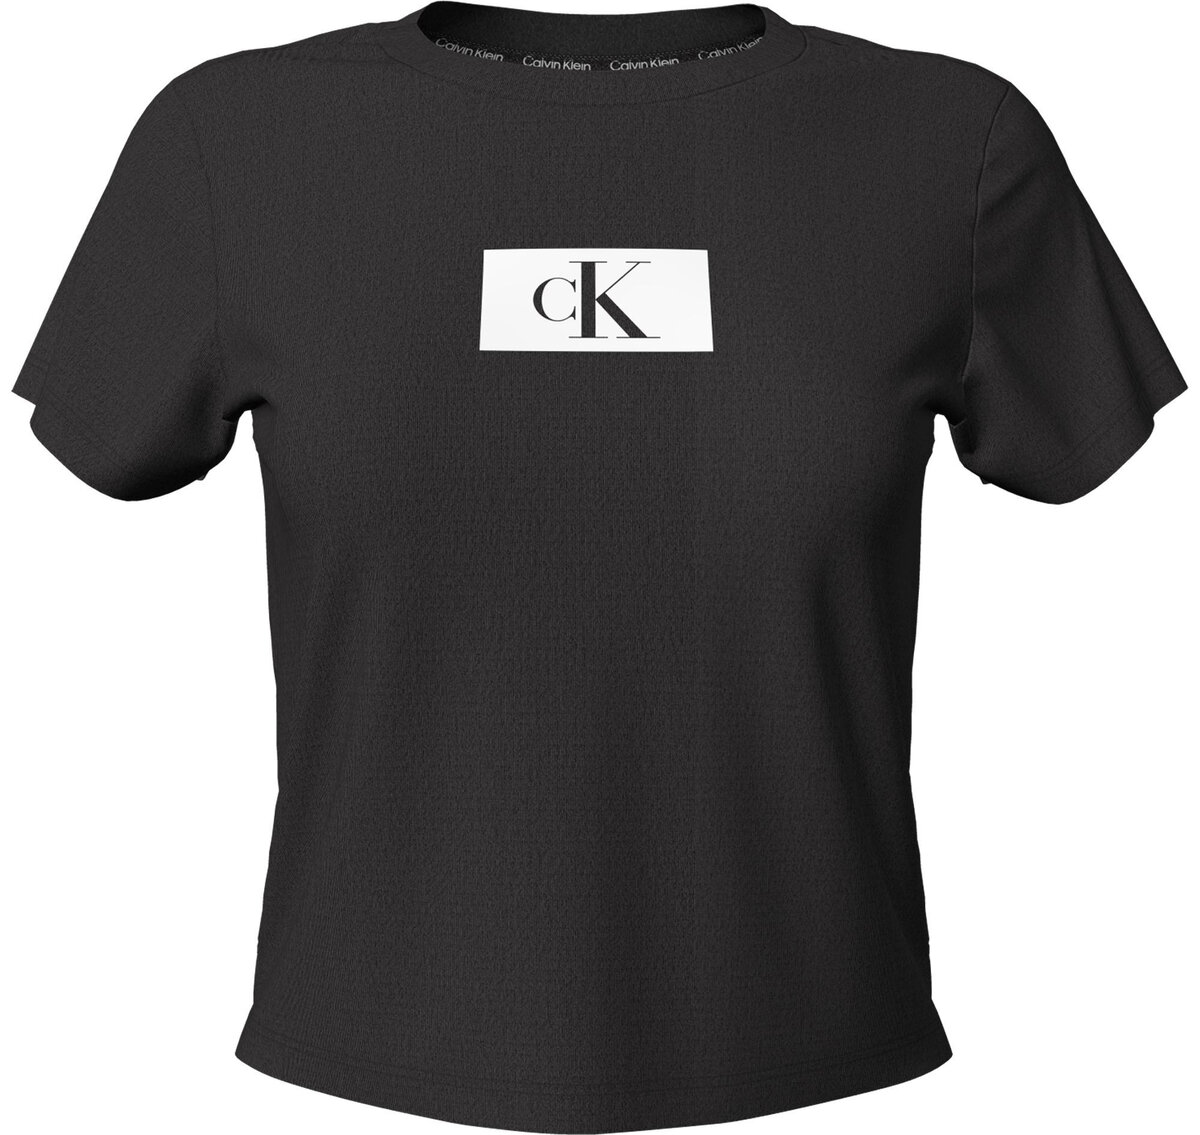 Klasické dámské tričko Calvin Klein 1996 černé, M i10_P67114_2:91_